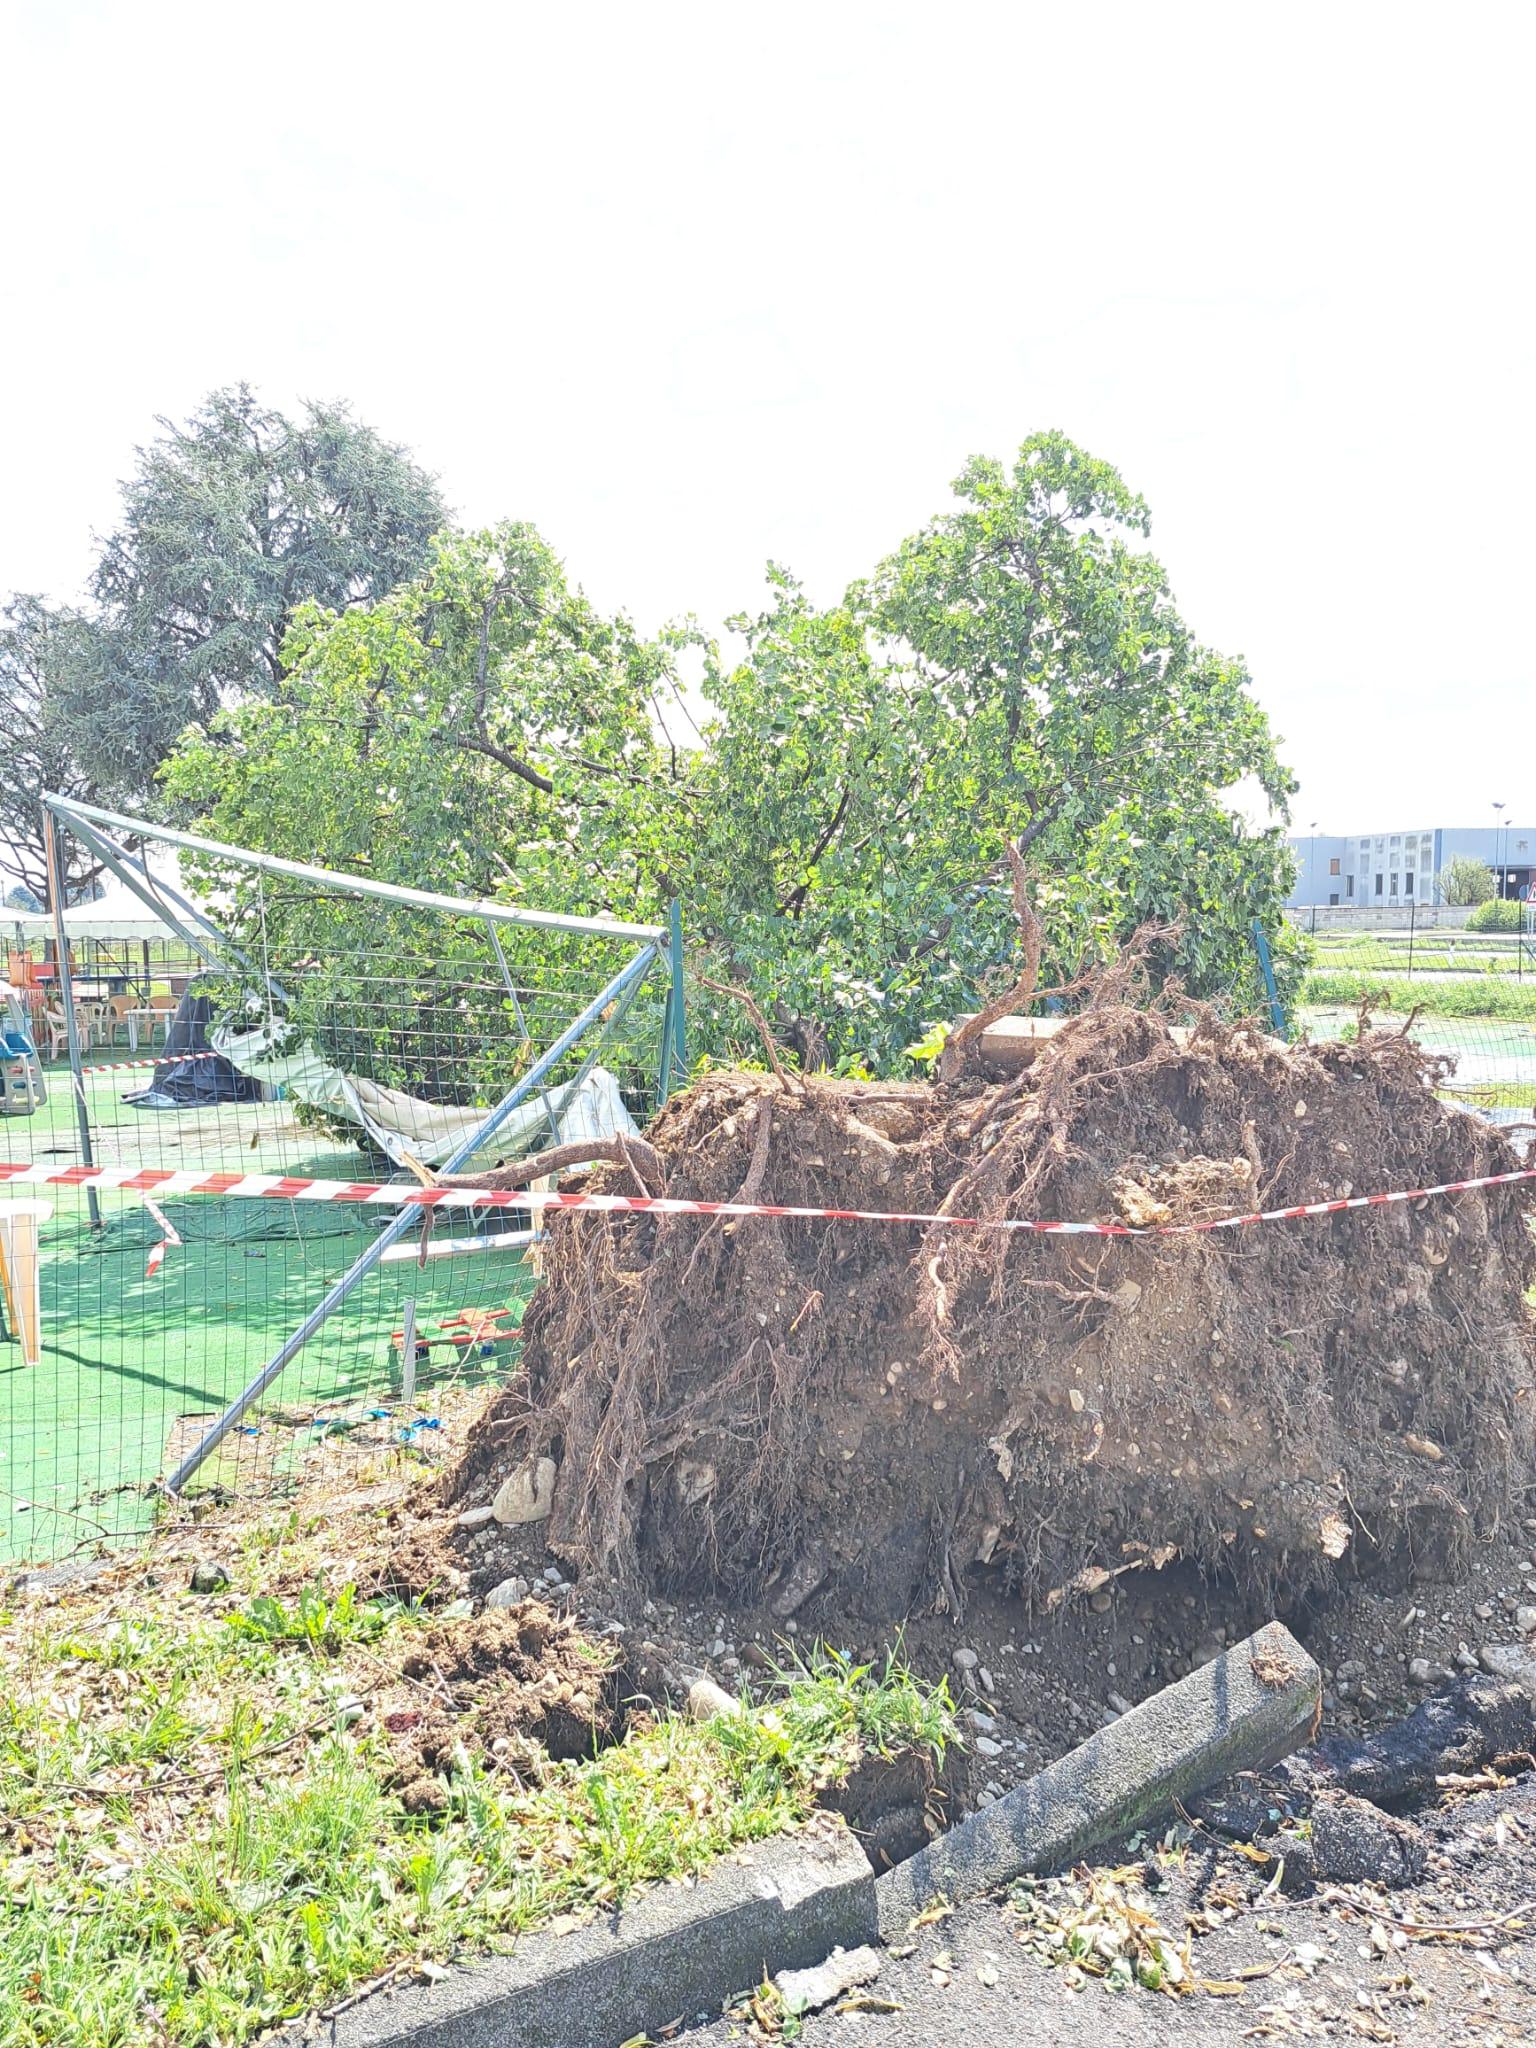 20230730 gommolandia caduto albero danni maltempo (3)